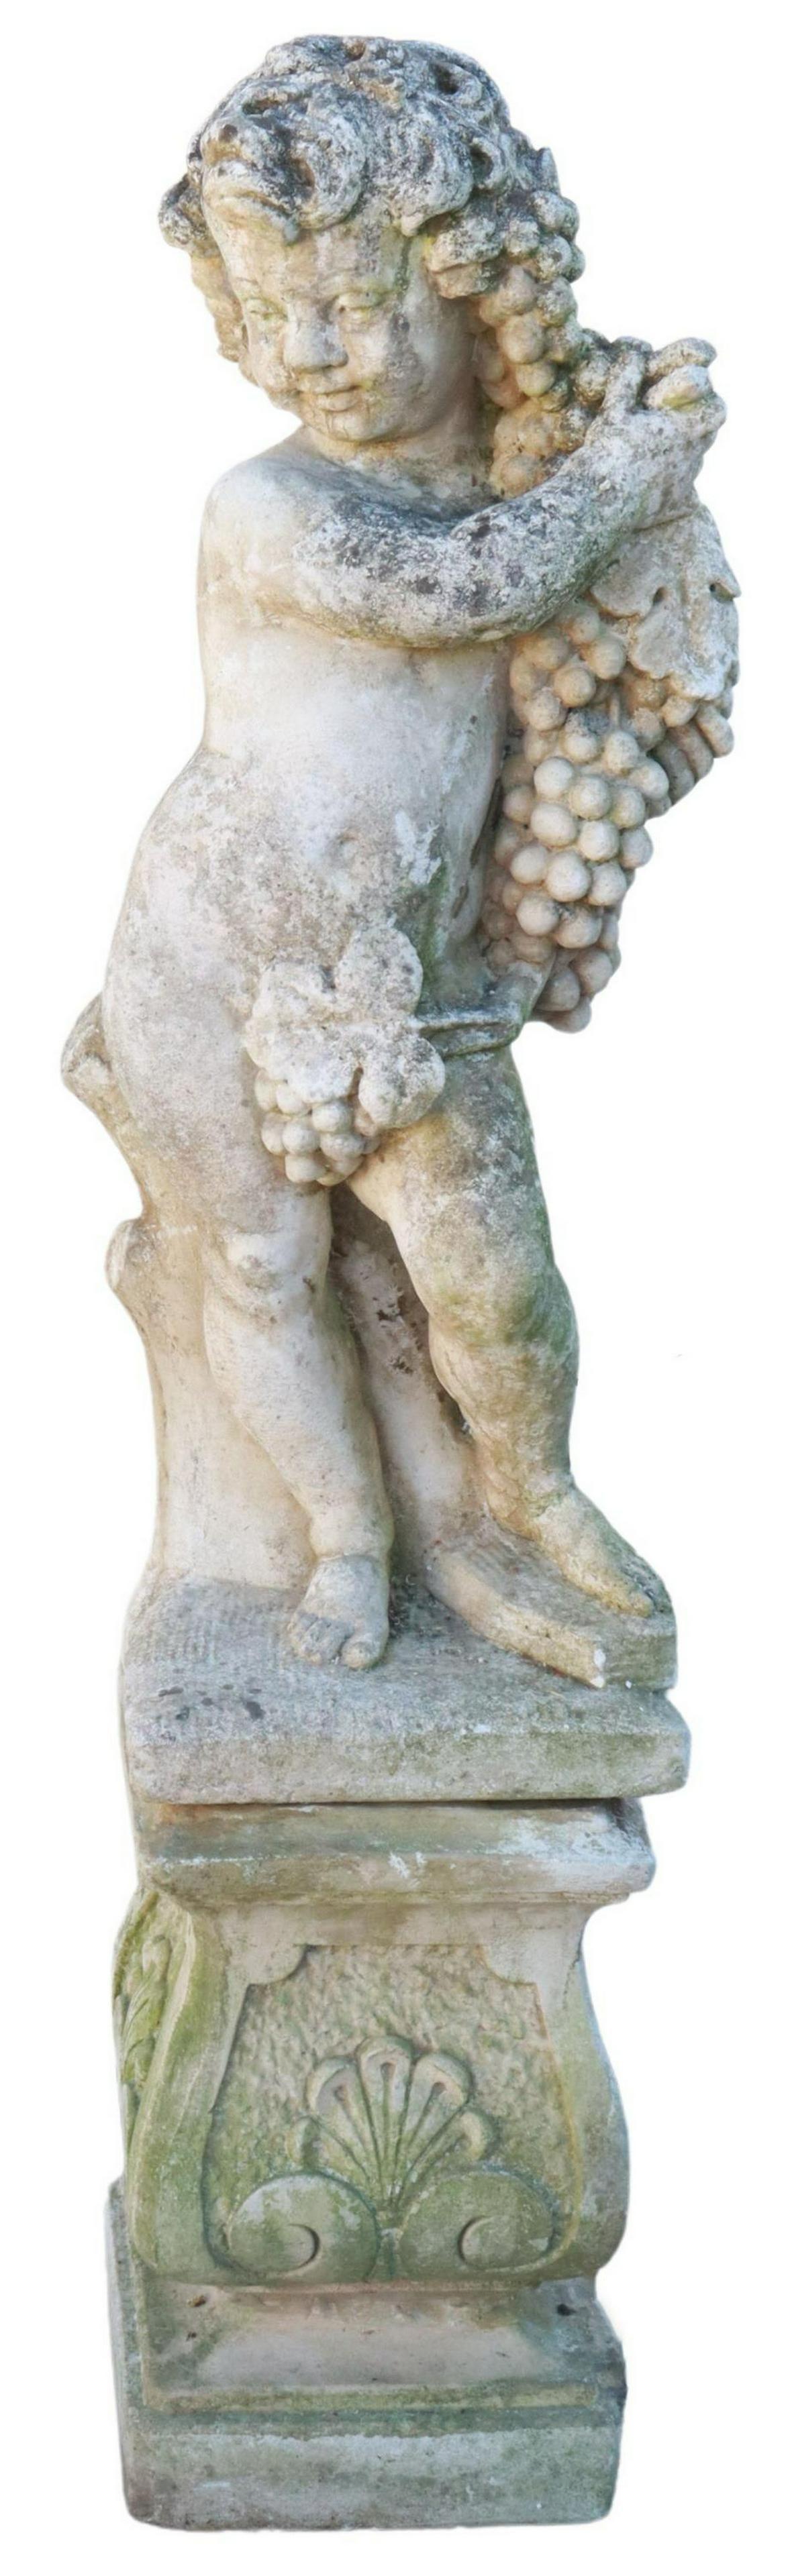 Sculpture de jardin en pierre moulée, putto avec des vignes, s'élevant sur un socle séparé, avec un motif de coquillage.

Dimensions
environ 54 